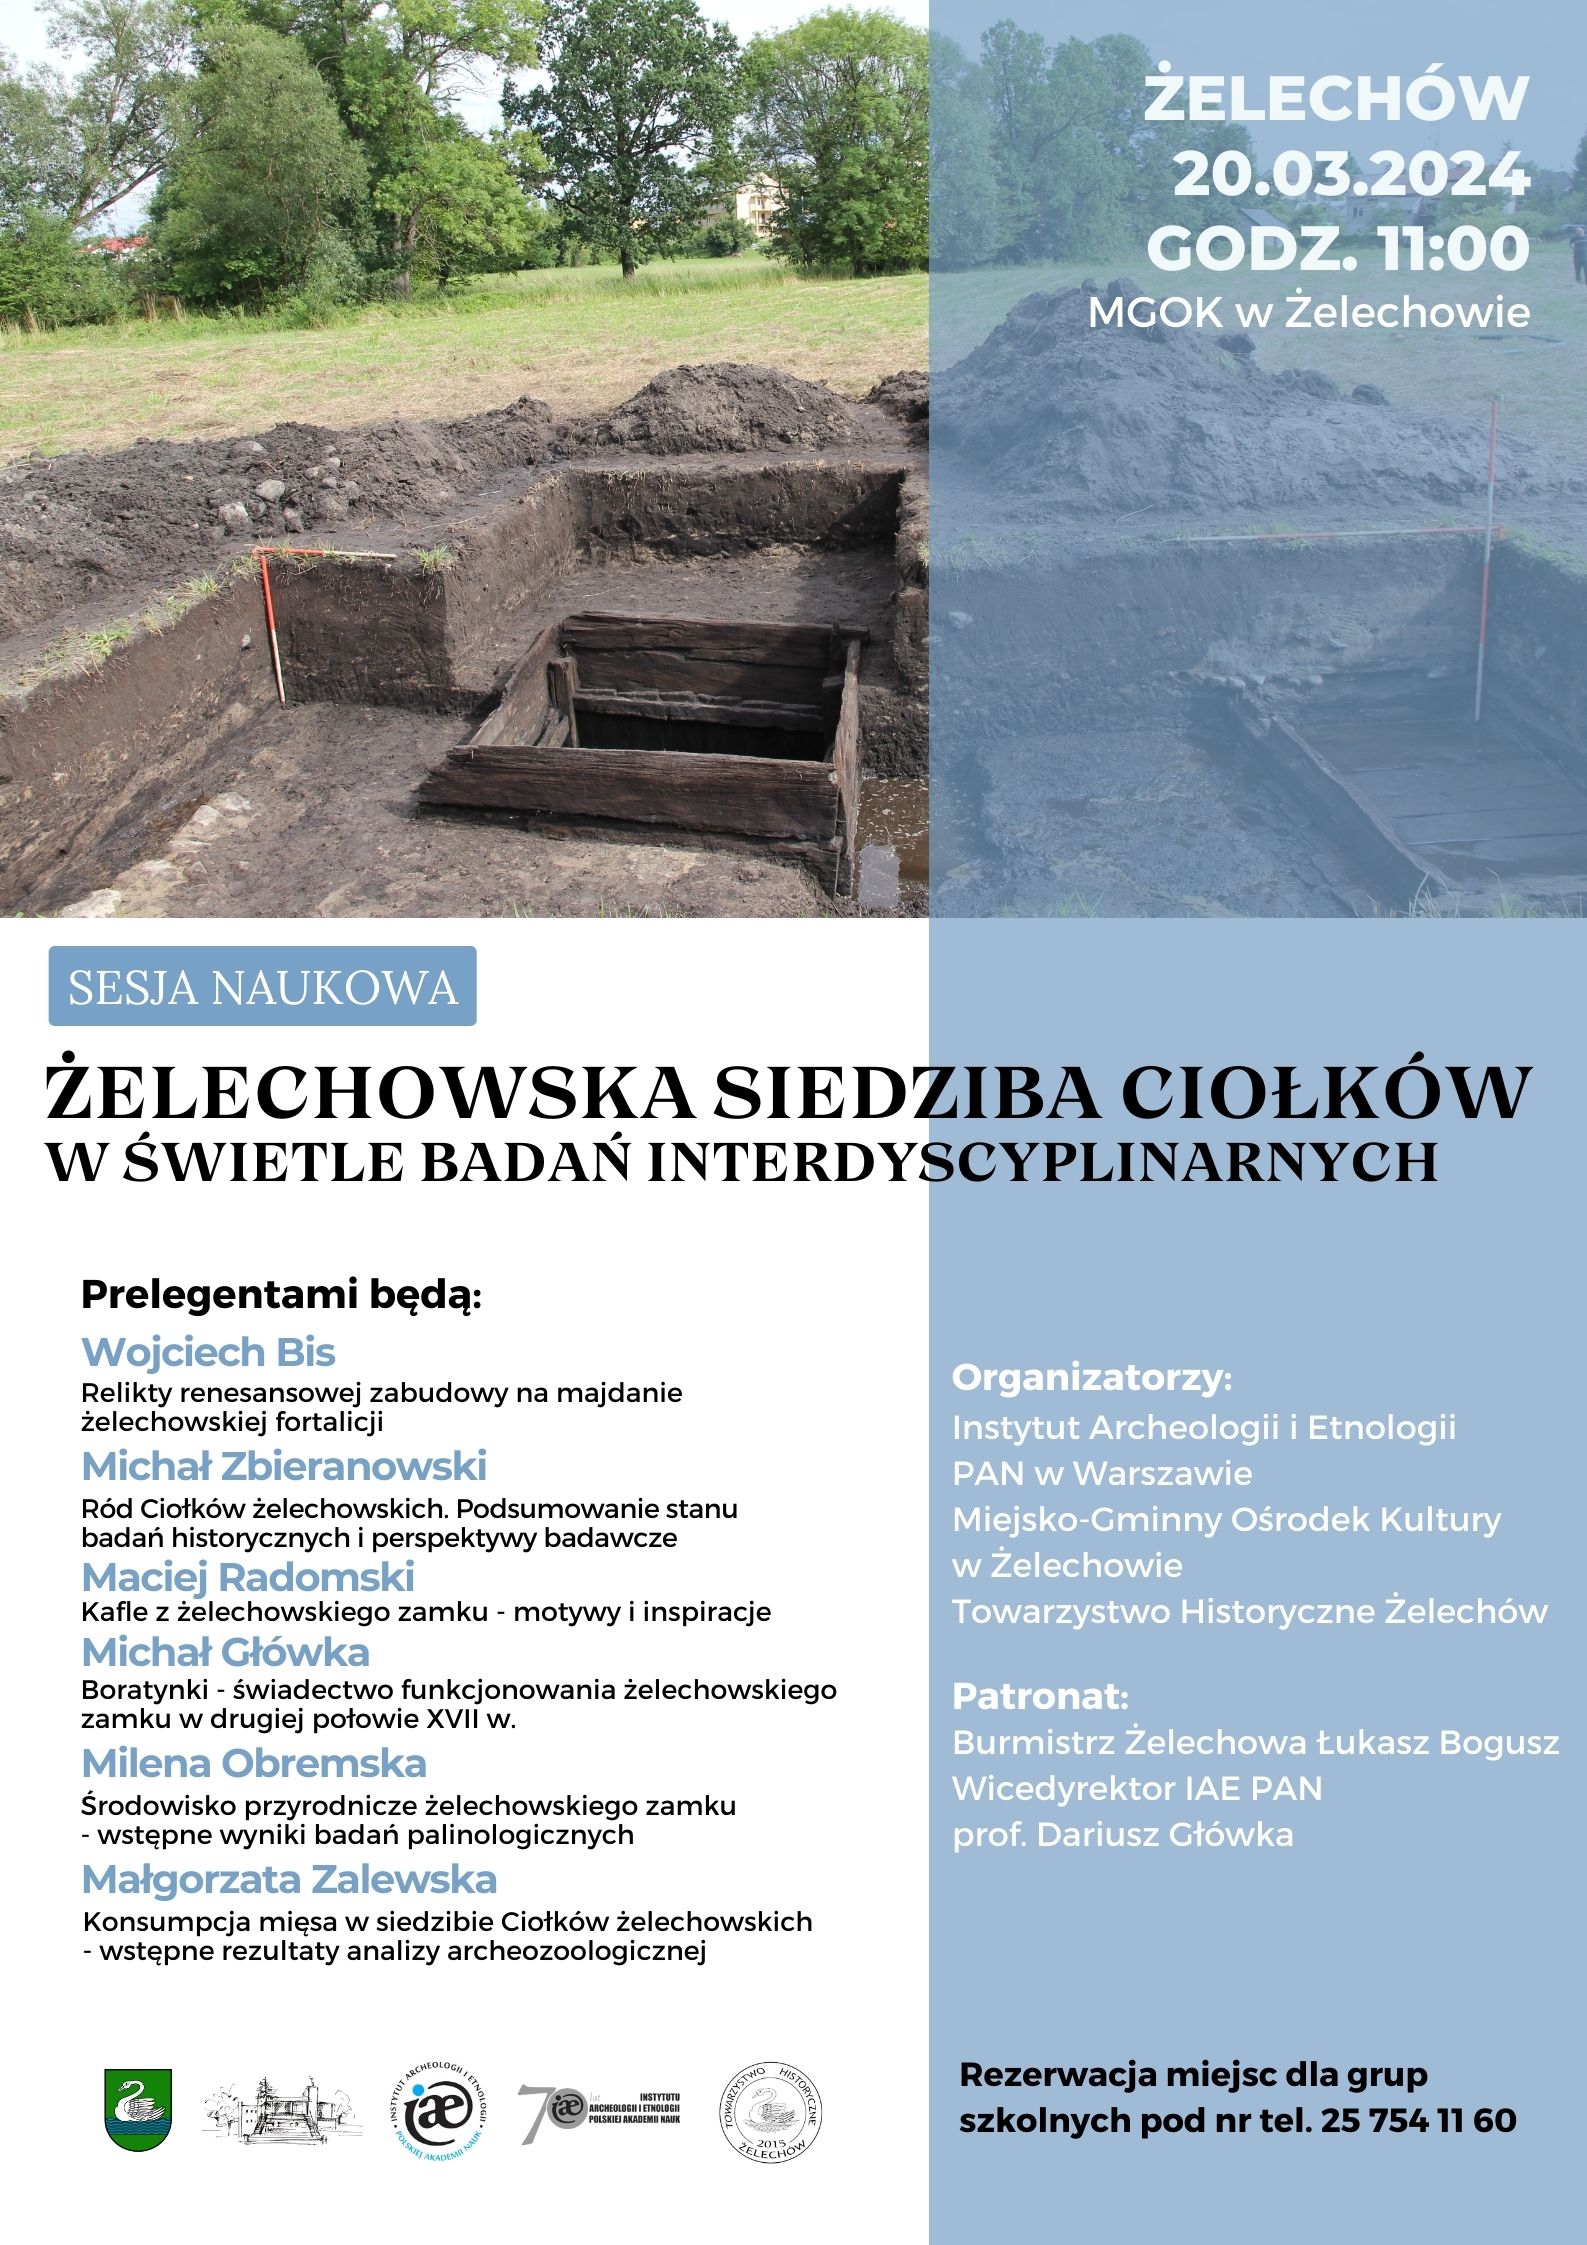 Miniaturka artykułu Prezentacja wyników badań archeologicznych i historycznych zamku w Żelechowie